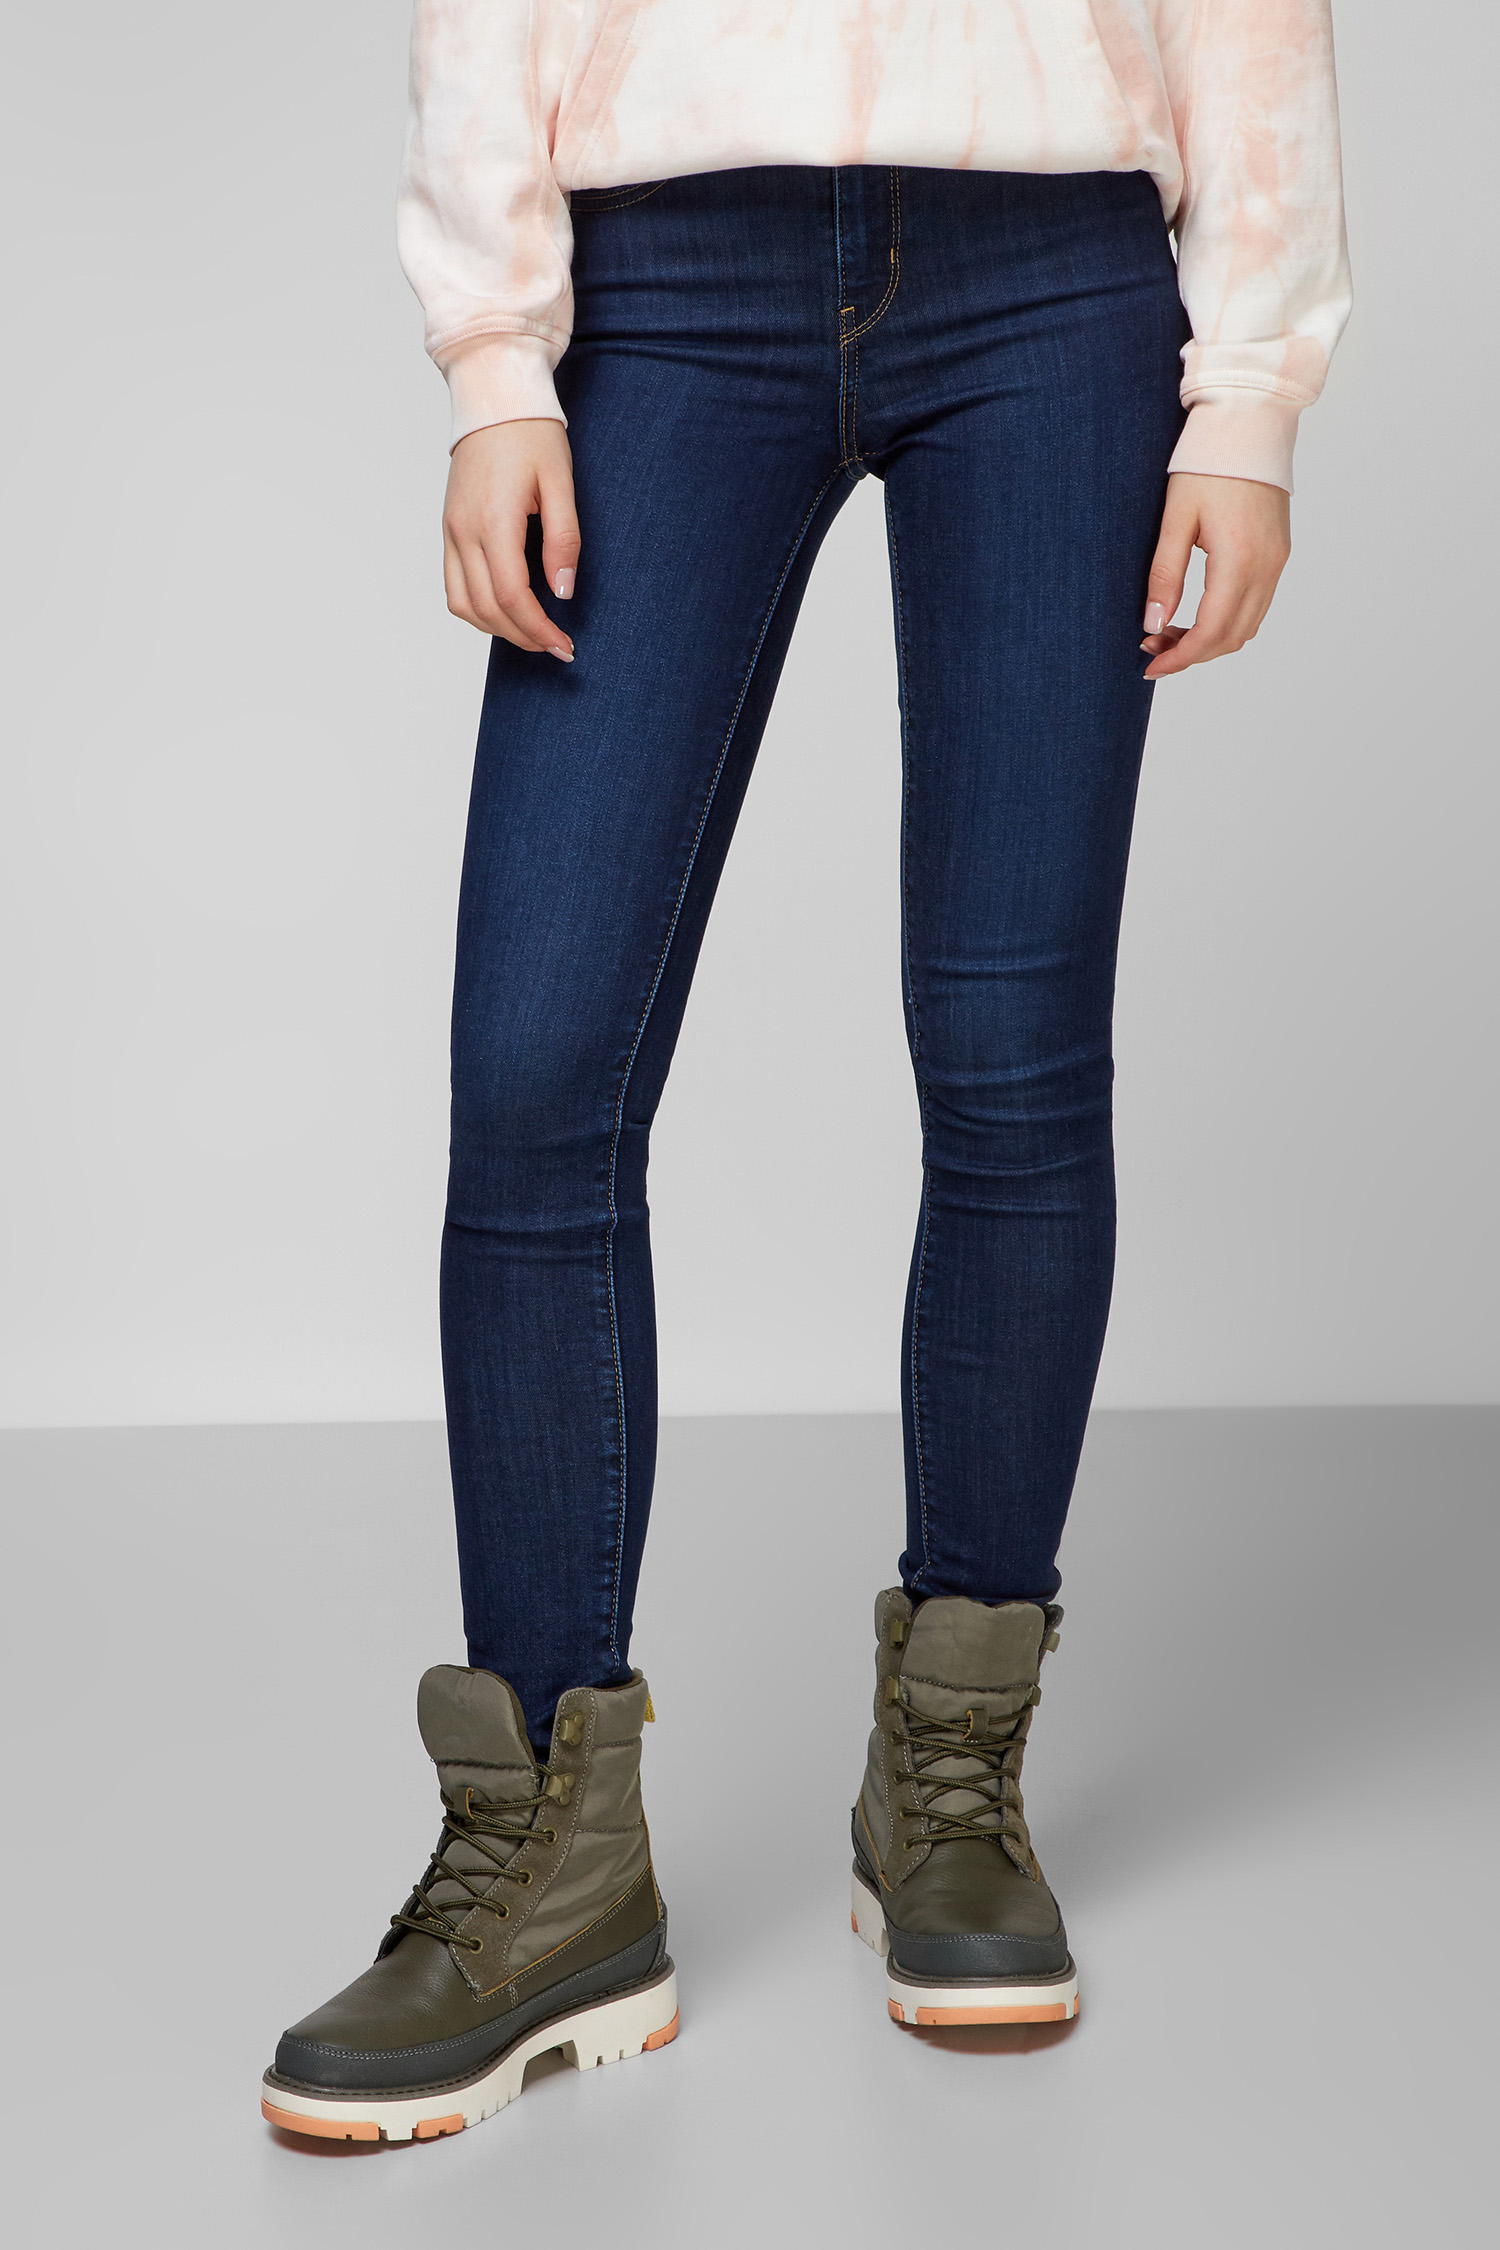 Темно-синие джинсы для девушек для девушек 721™ High-Rise Skinny Levi’s® 18882;0362